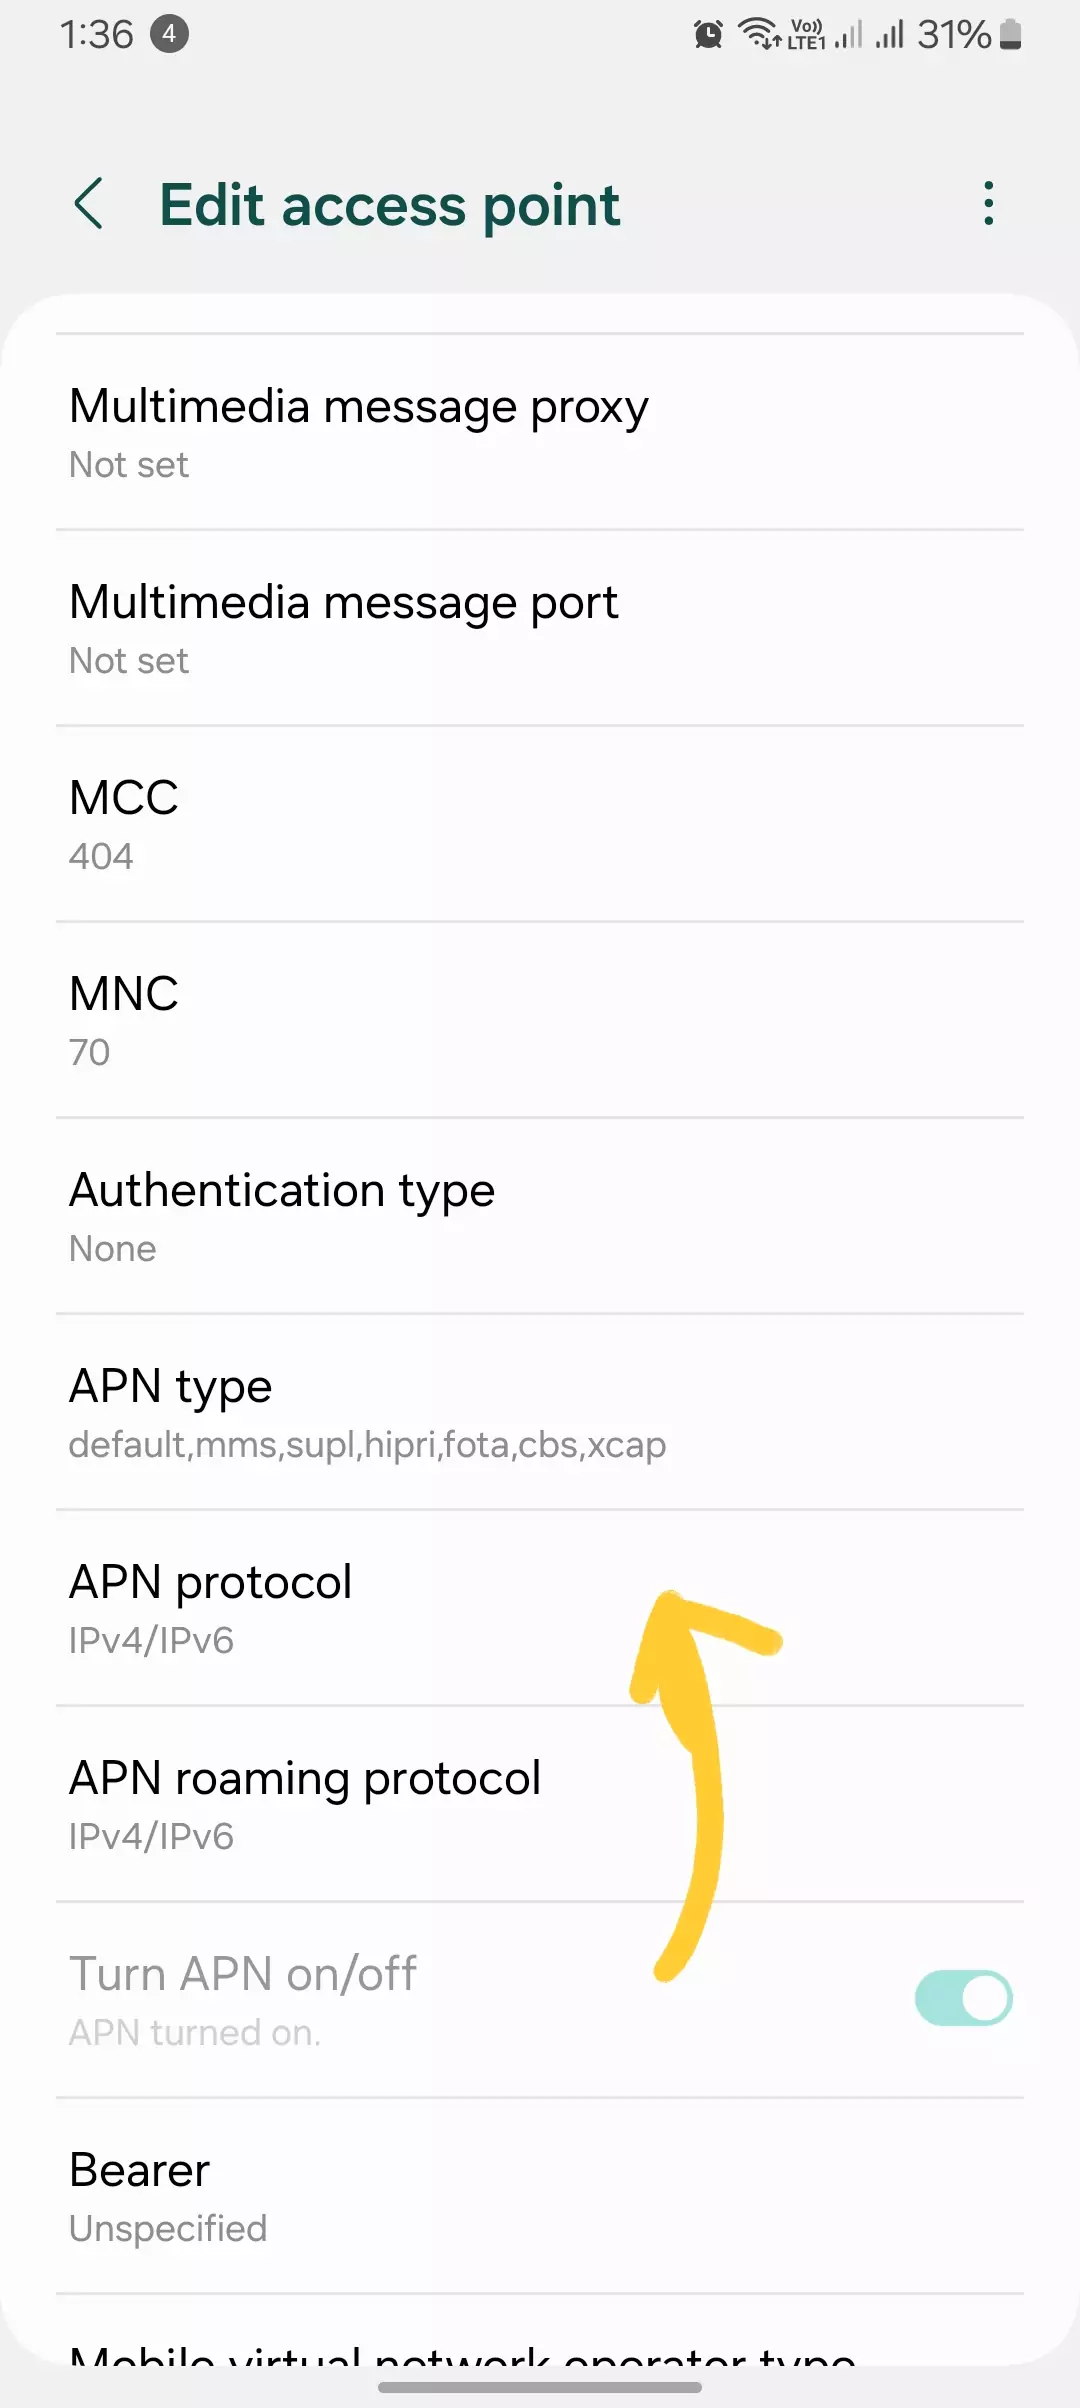 screenshot of apn type from the edit apn settings shown